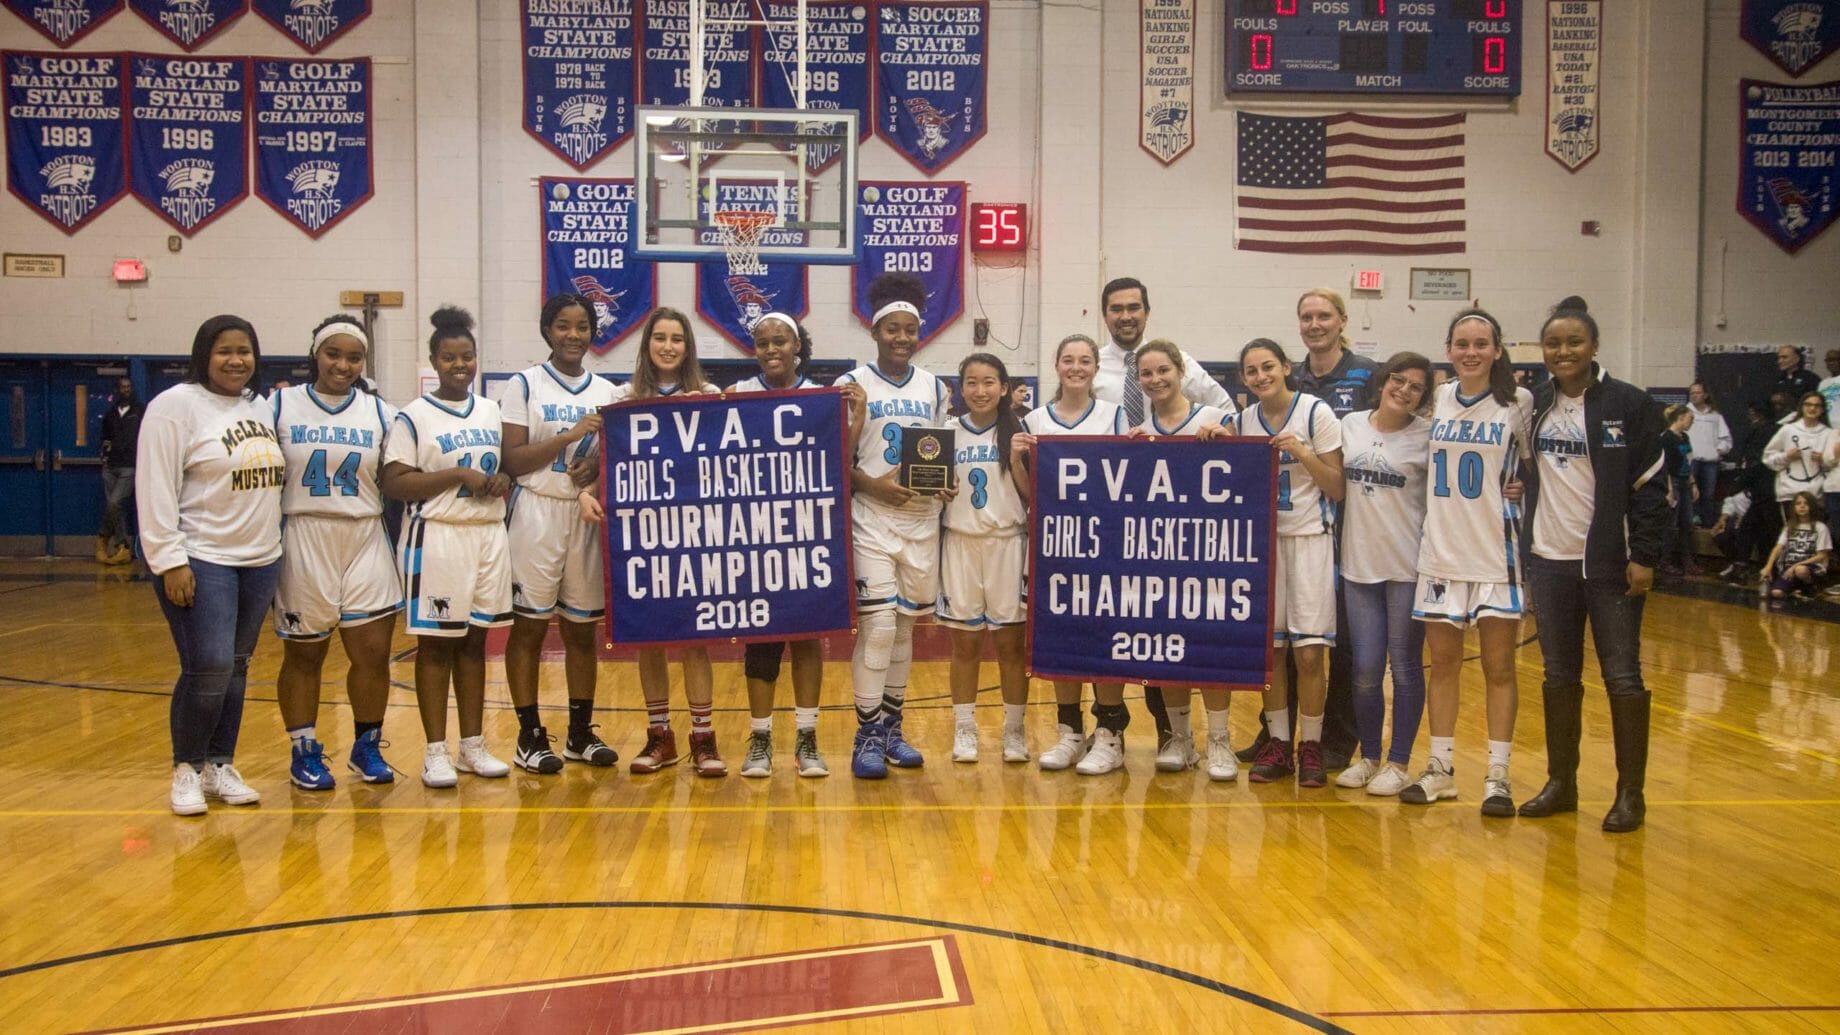 PVAC Girls Basketball Champions 2018